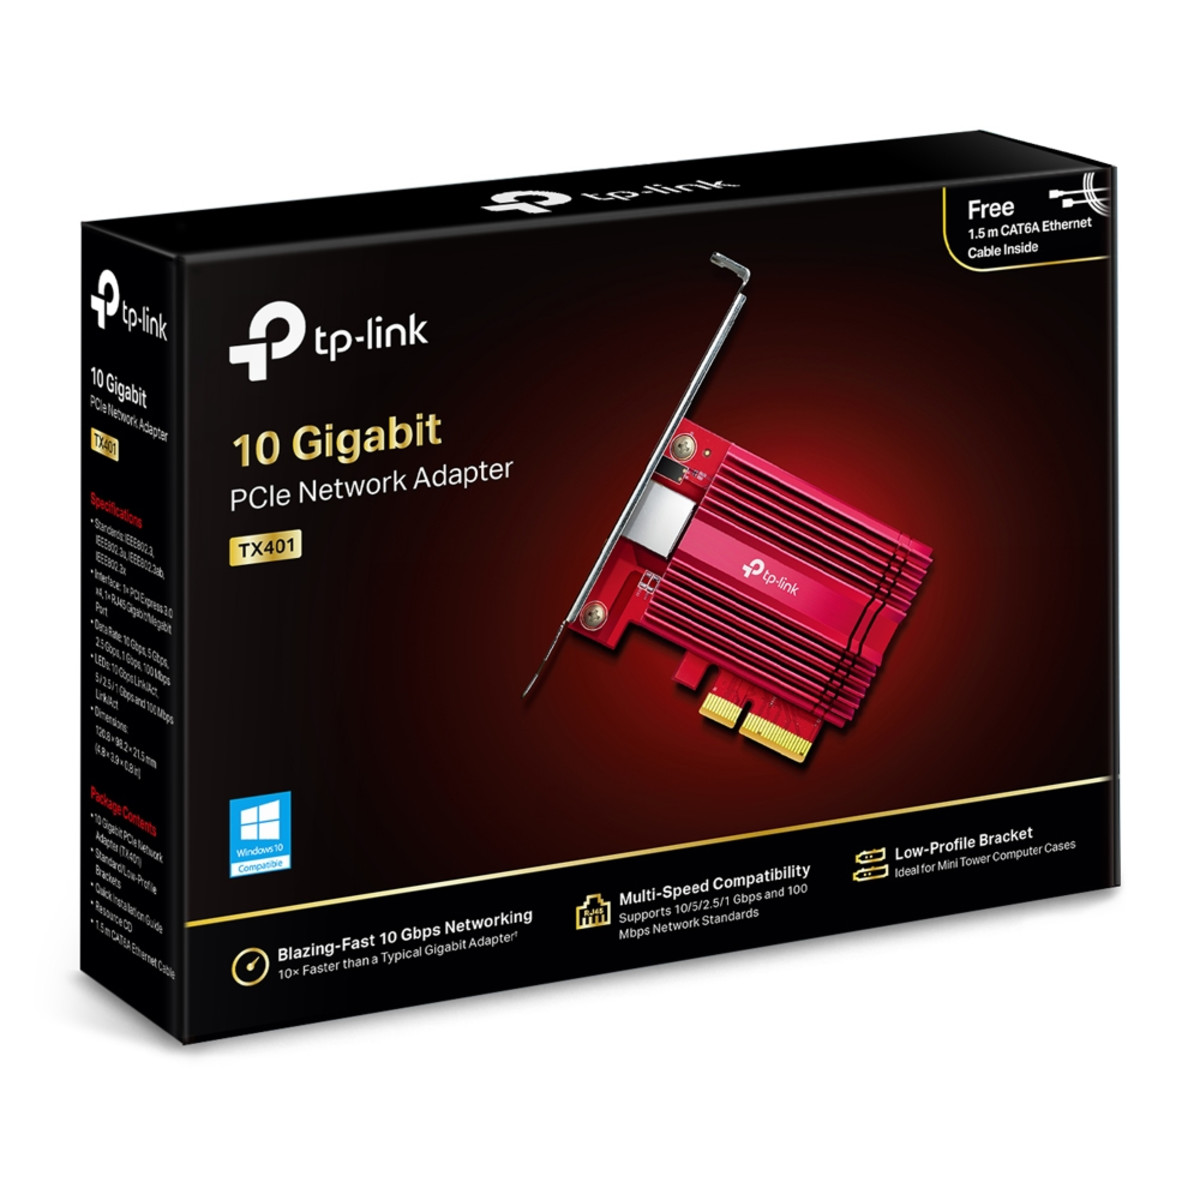 10 Gigabit PCI Express Network Adapter